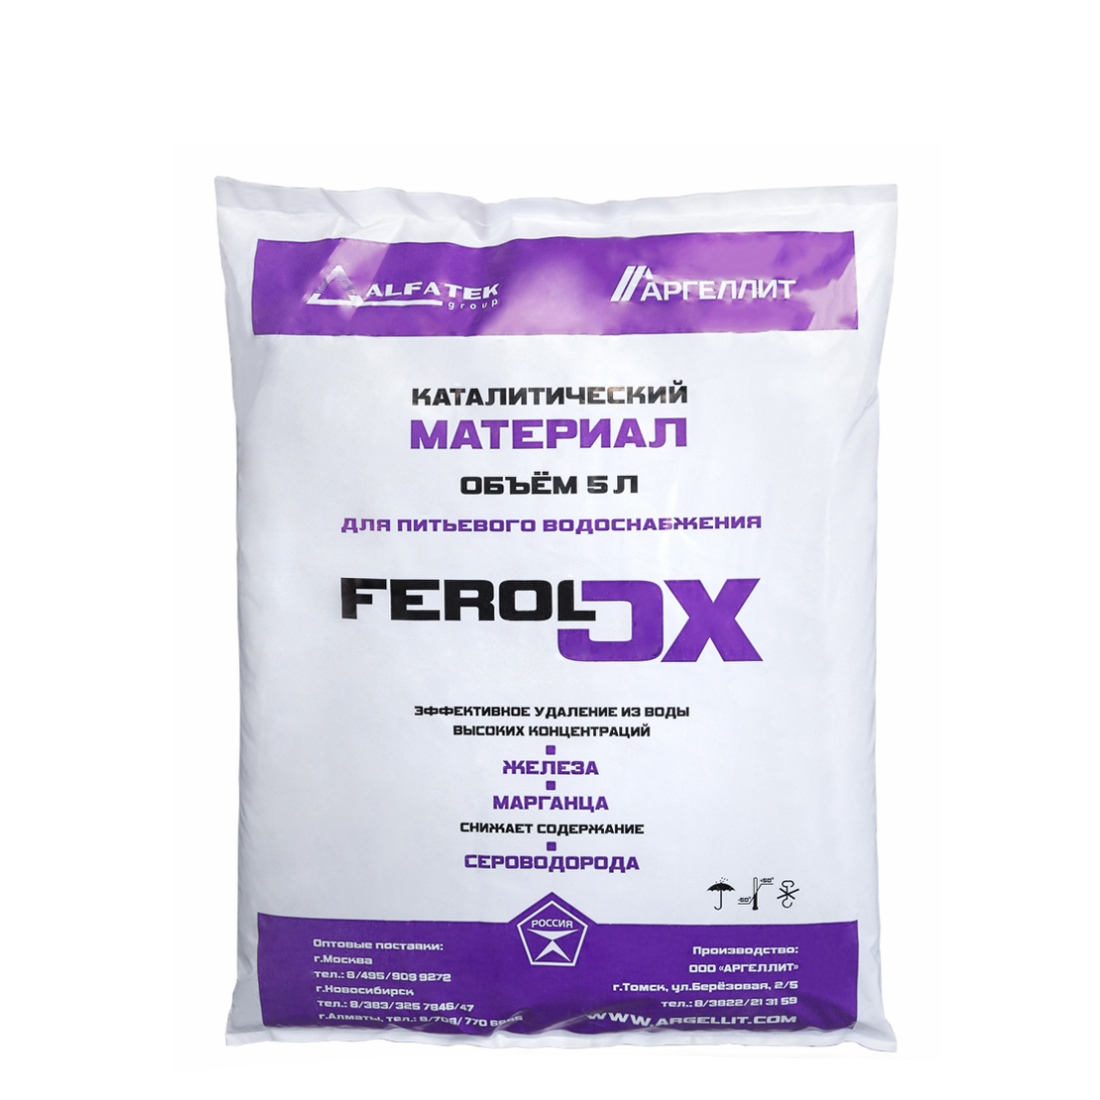 Засыпки для фильтров воды. Загрузка каталитический материал Ferolox (5 л, 7.5 кг). Ferolox фильтрующий материал. Засыпка для фильтров обезжелезивания. ECOFEROX фильтрующий материал.